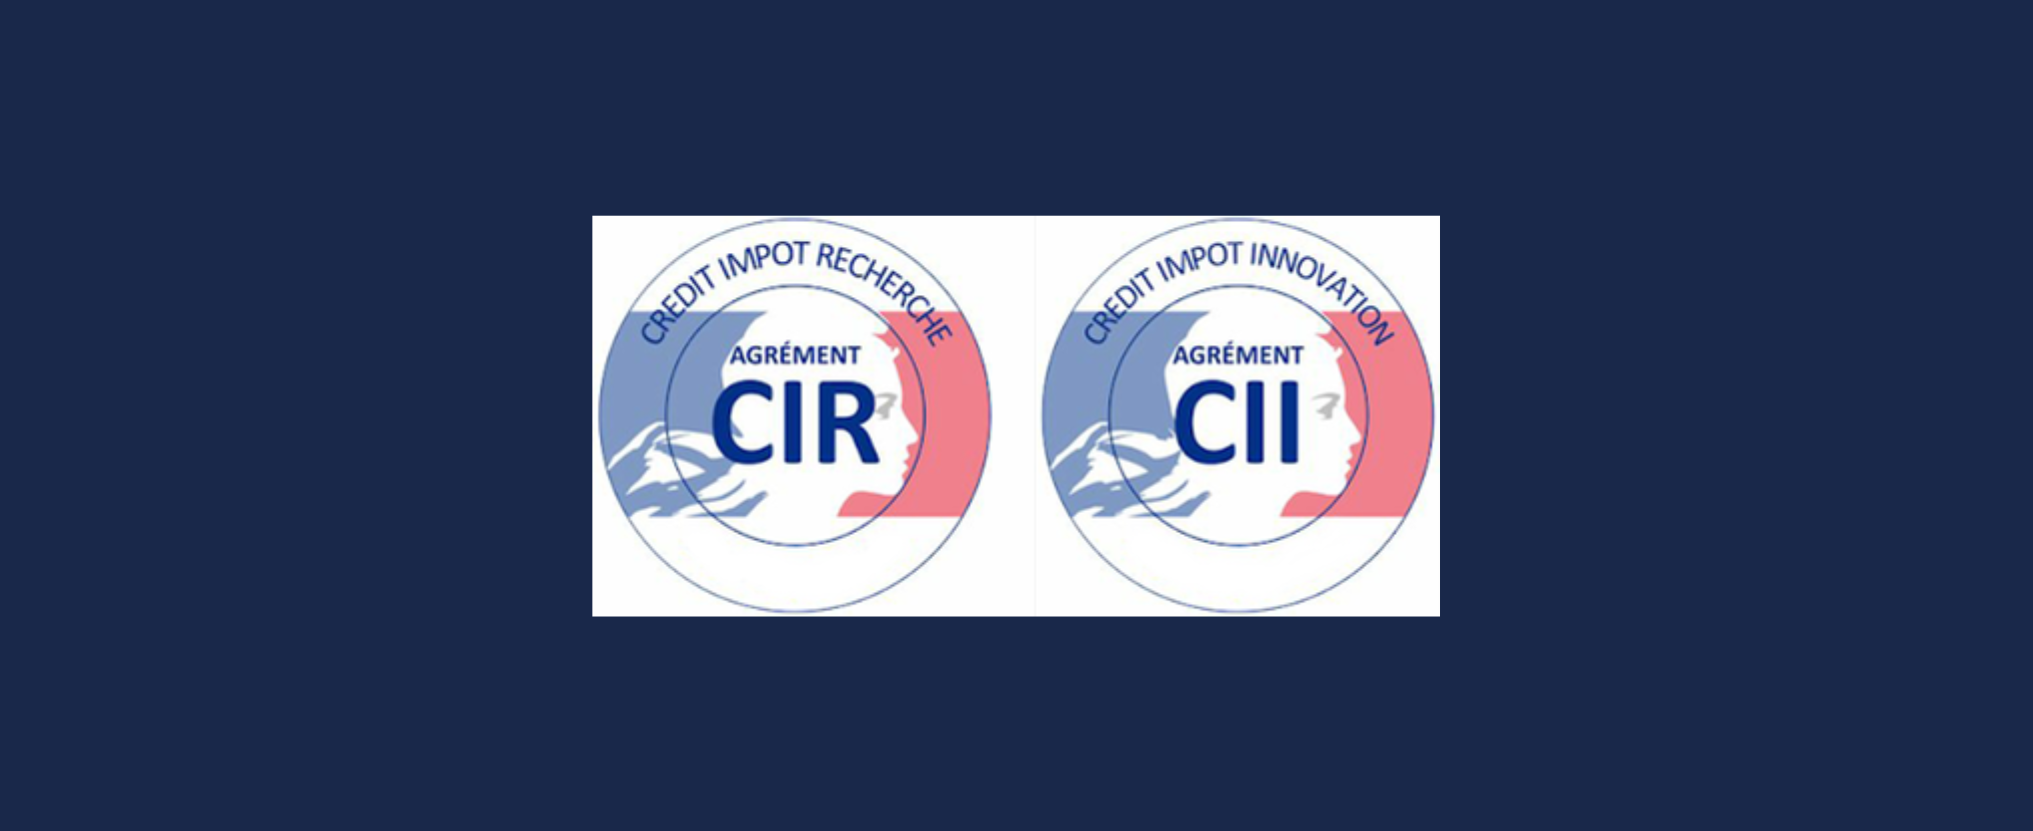 Logo du CIR et CII crédit d'impôt recherche et du crédit d'impôt innovation